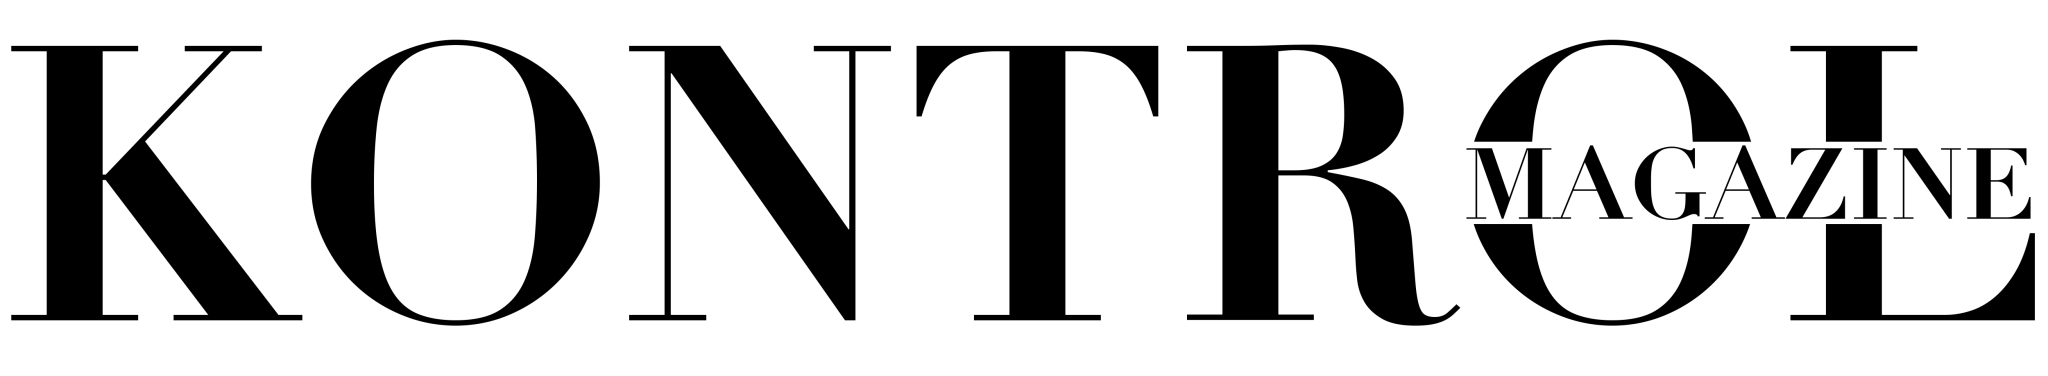 Kontrol-Logo-1.png